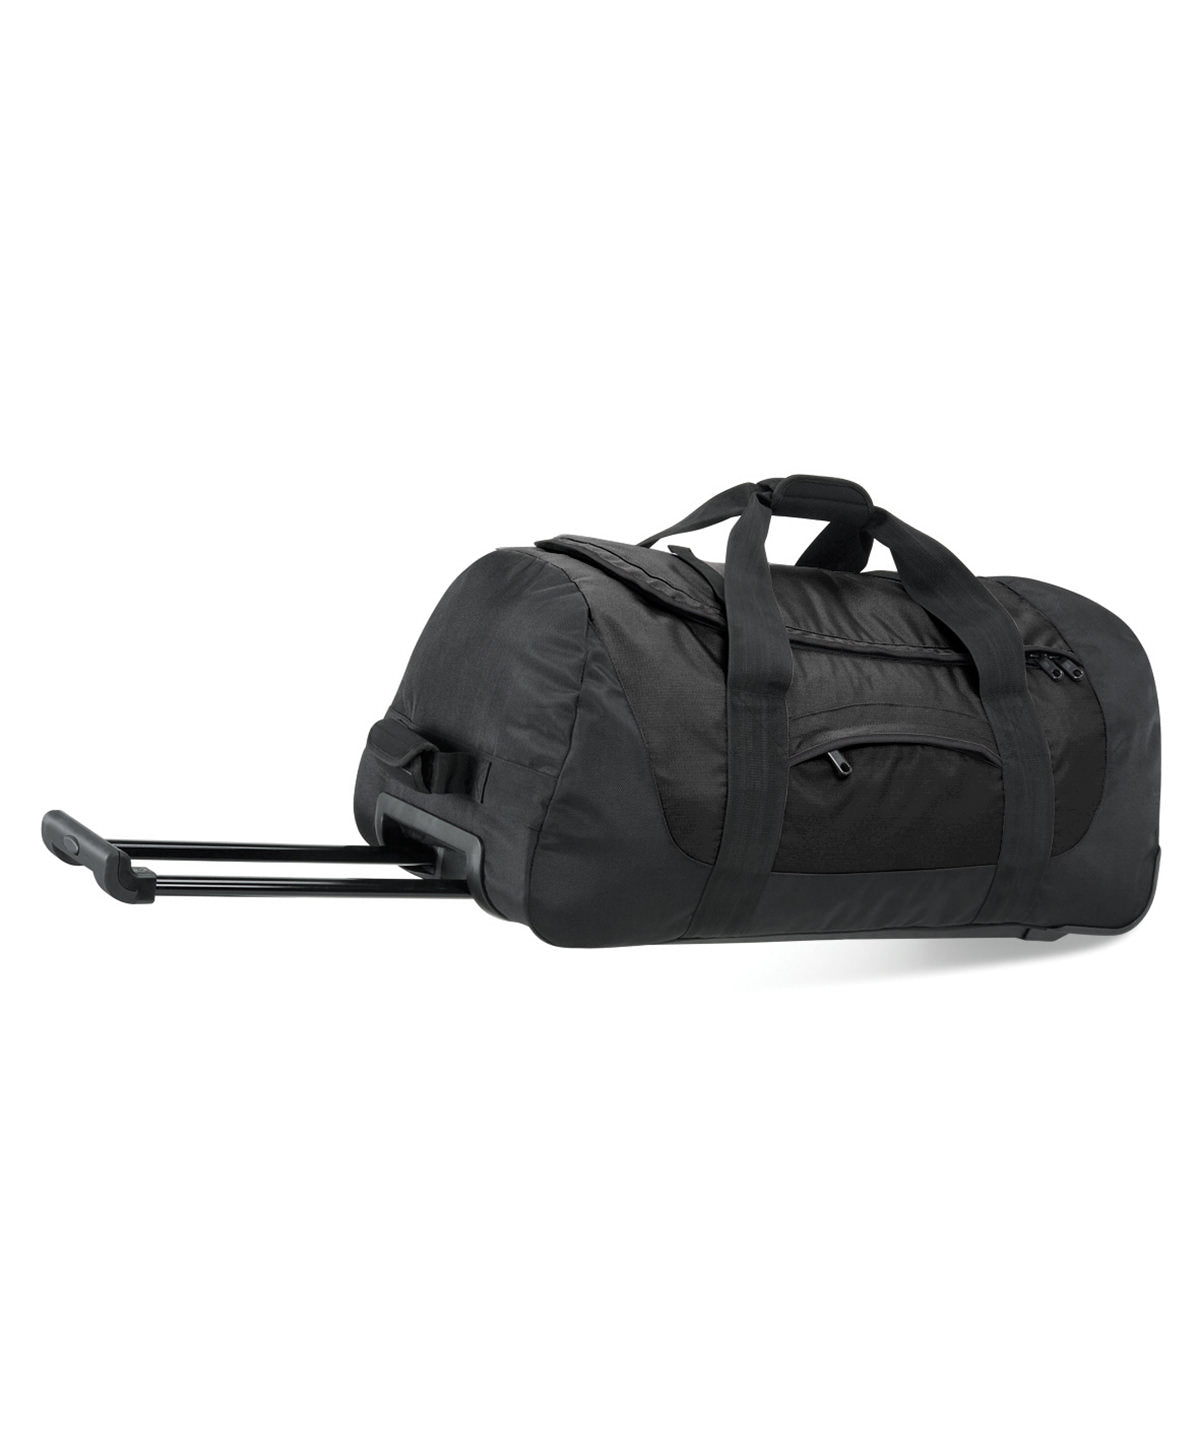 Töskur - Vessel™ Team Wheelie Bag